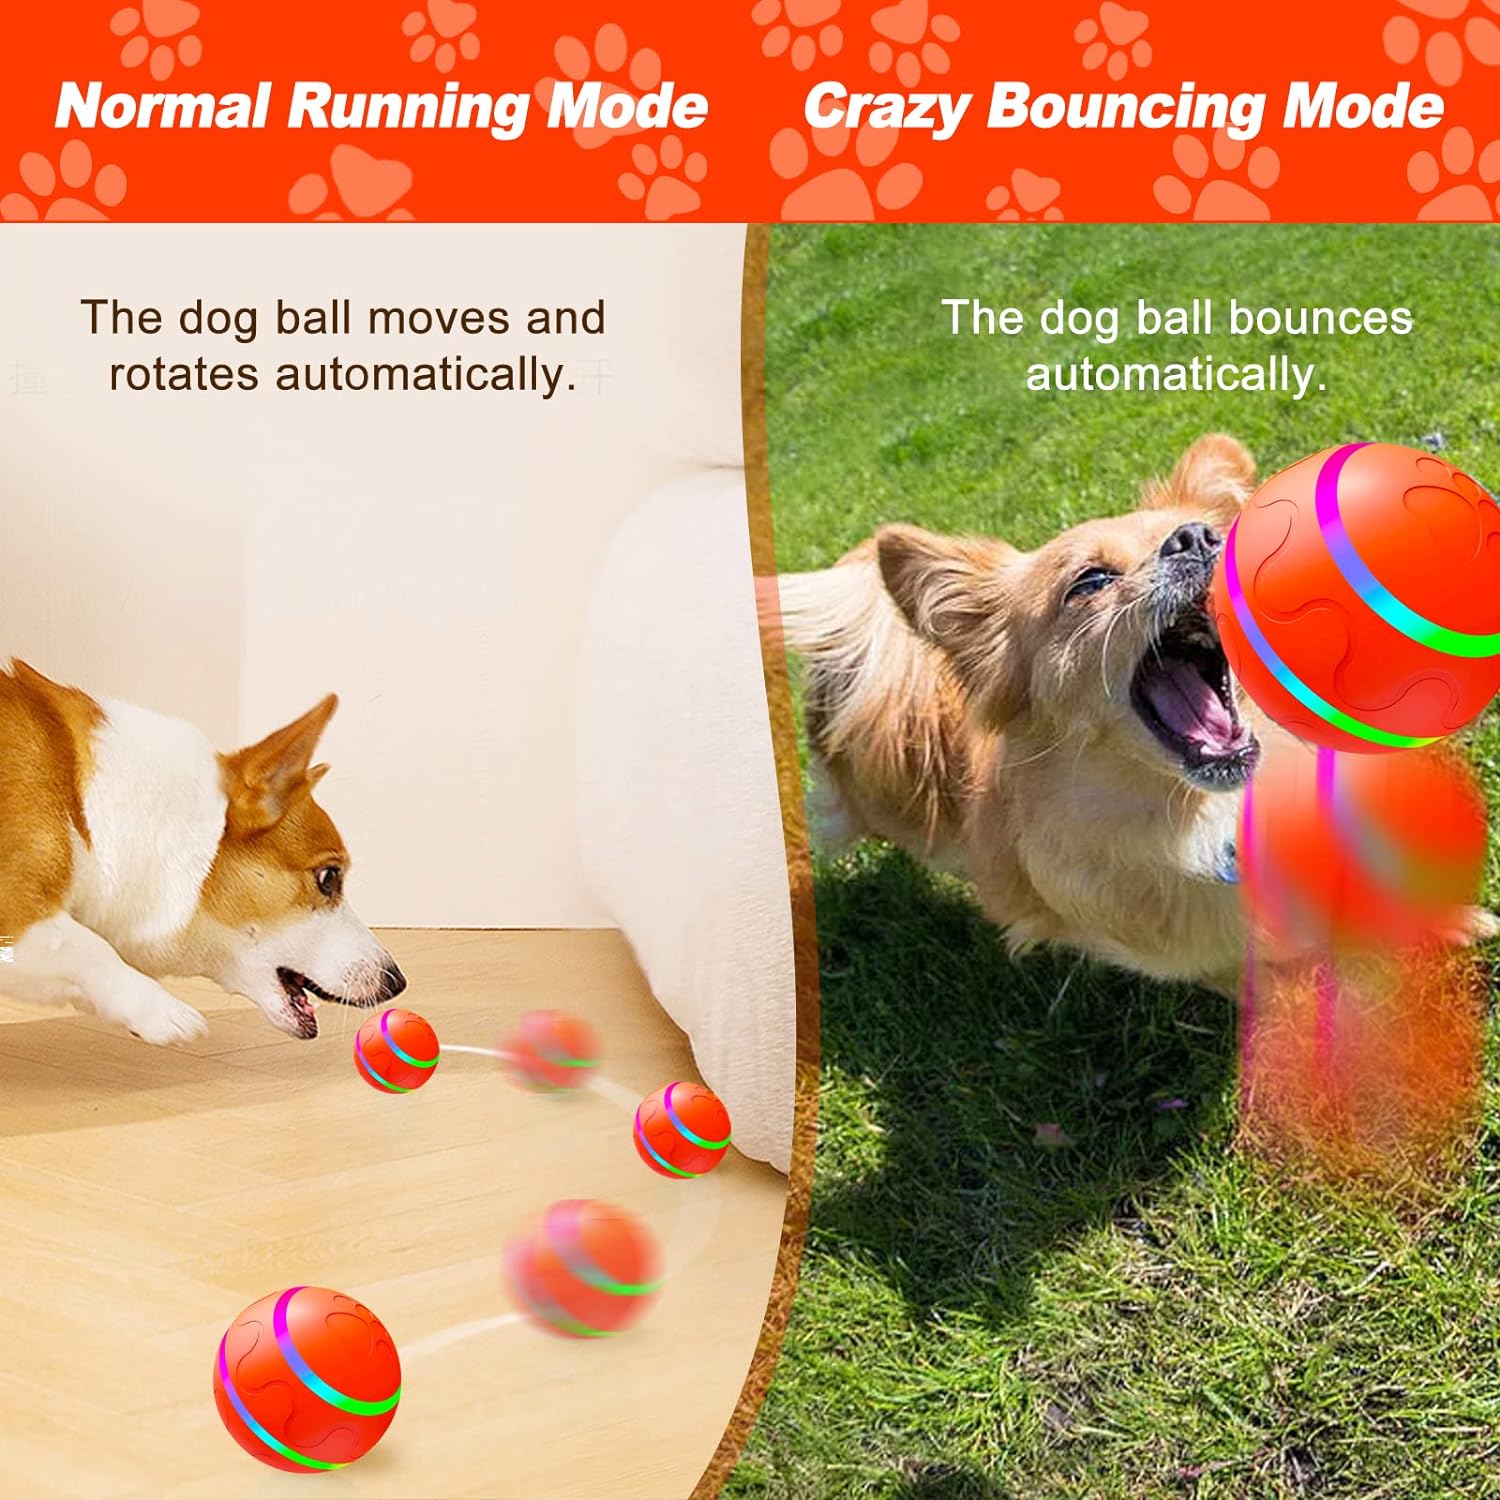  Syhood 2 juguetes interactivos para perros, juguetes  automáticos de bola rodante, juguetes para perros en movimiento con luces  LED de flash seguro y duradero, bolas de juguete para perros grandes,  medianos